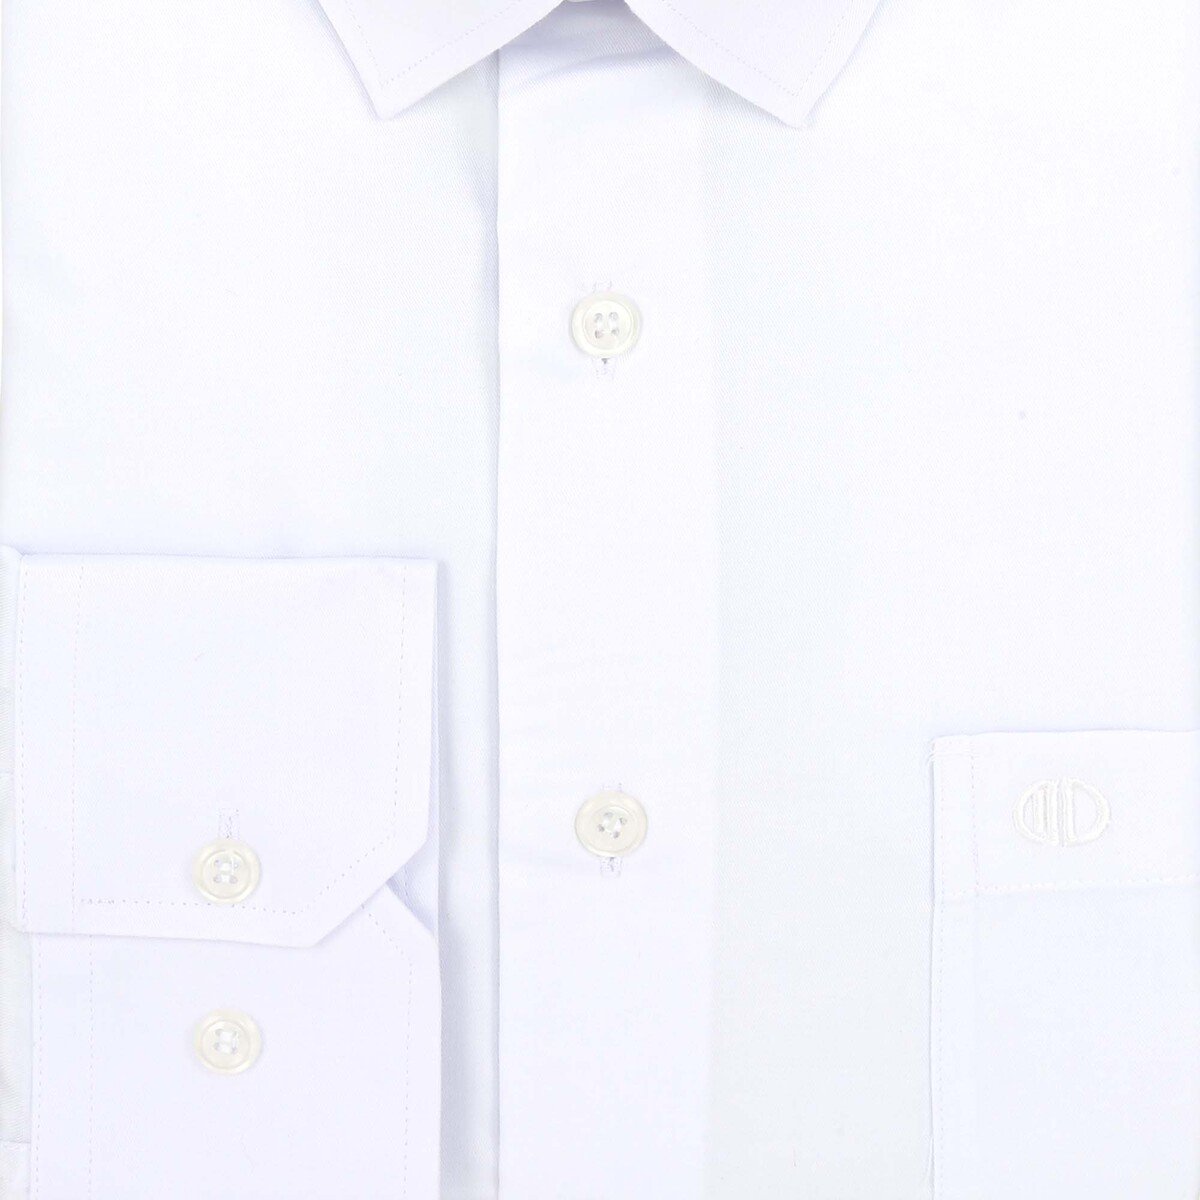 Marco Donateli Men's Formal Shirt Solid White, 44